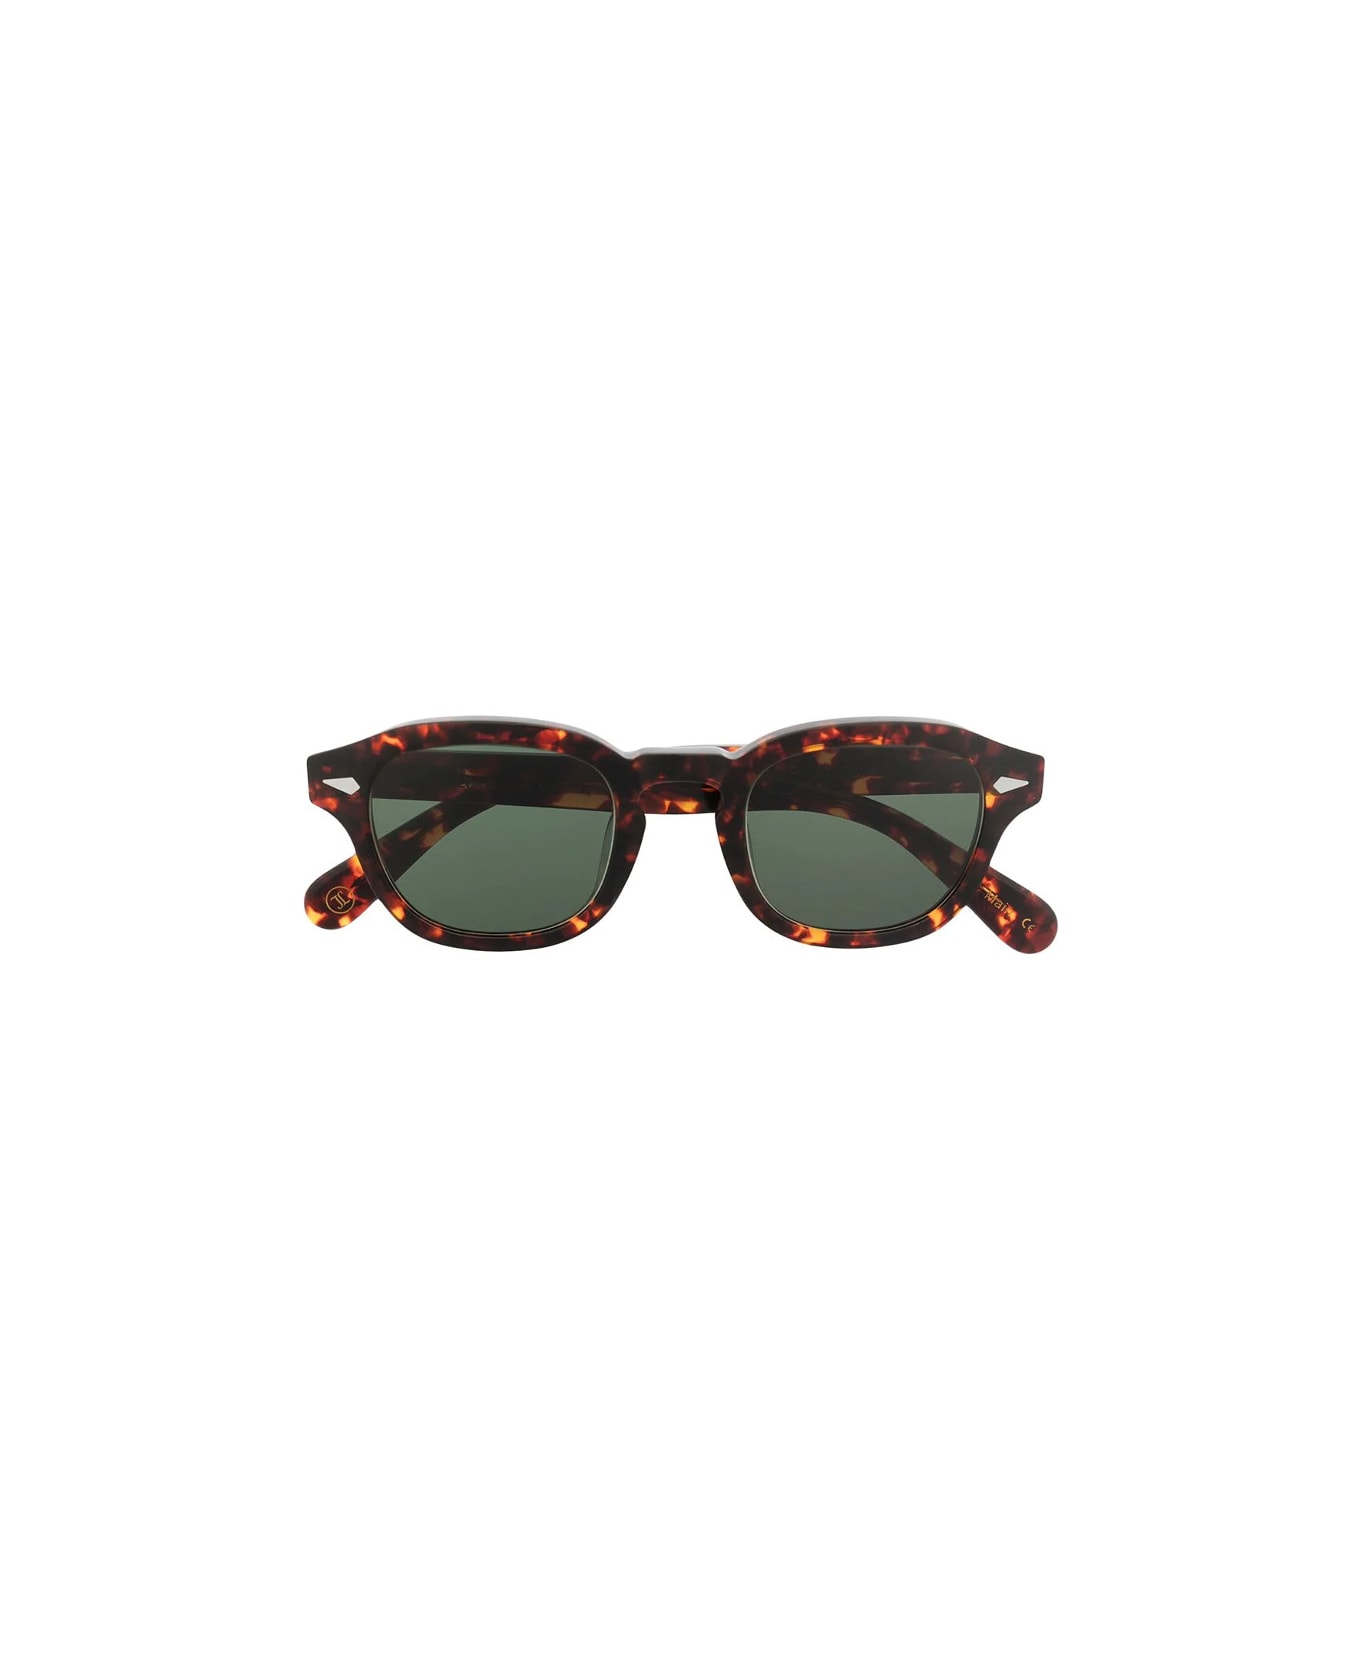 Lesca Posh-s 424 Sunglasses - Tartarugato